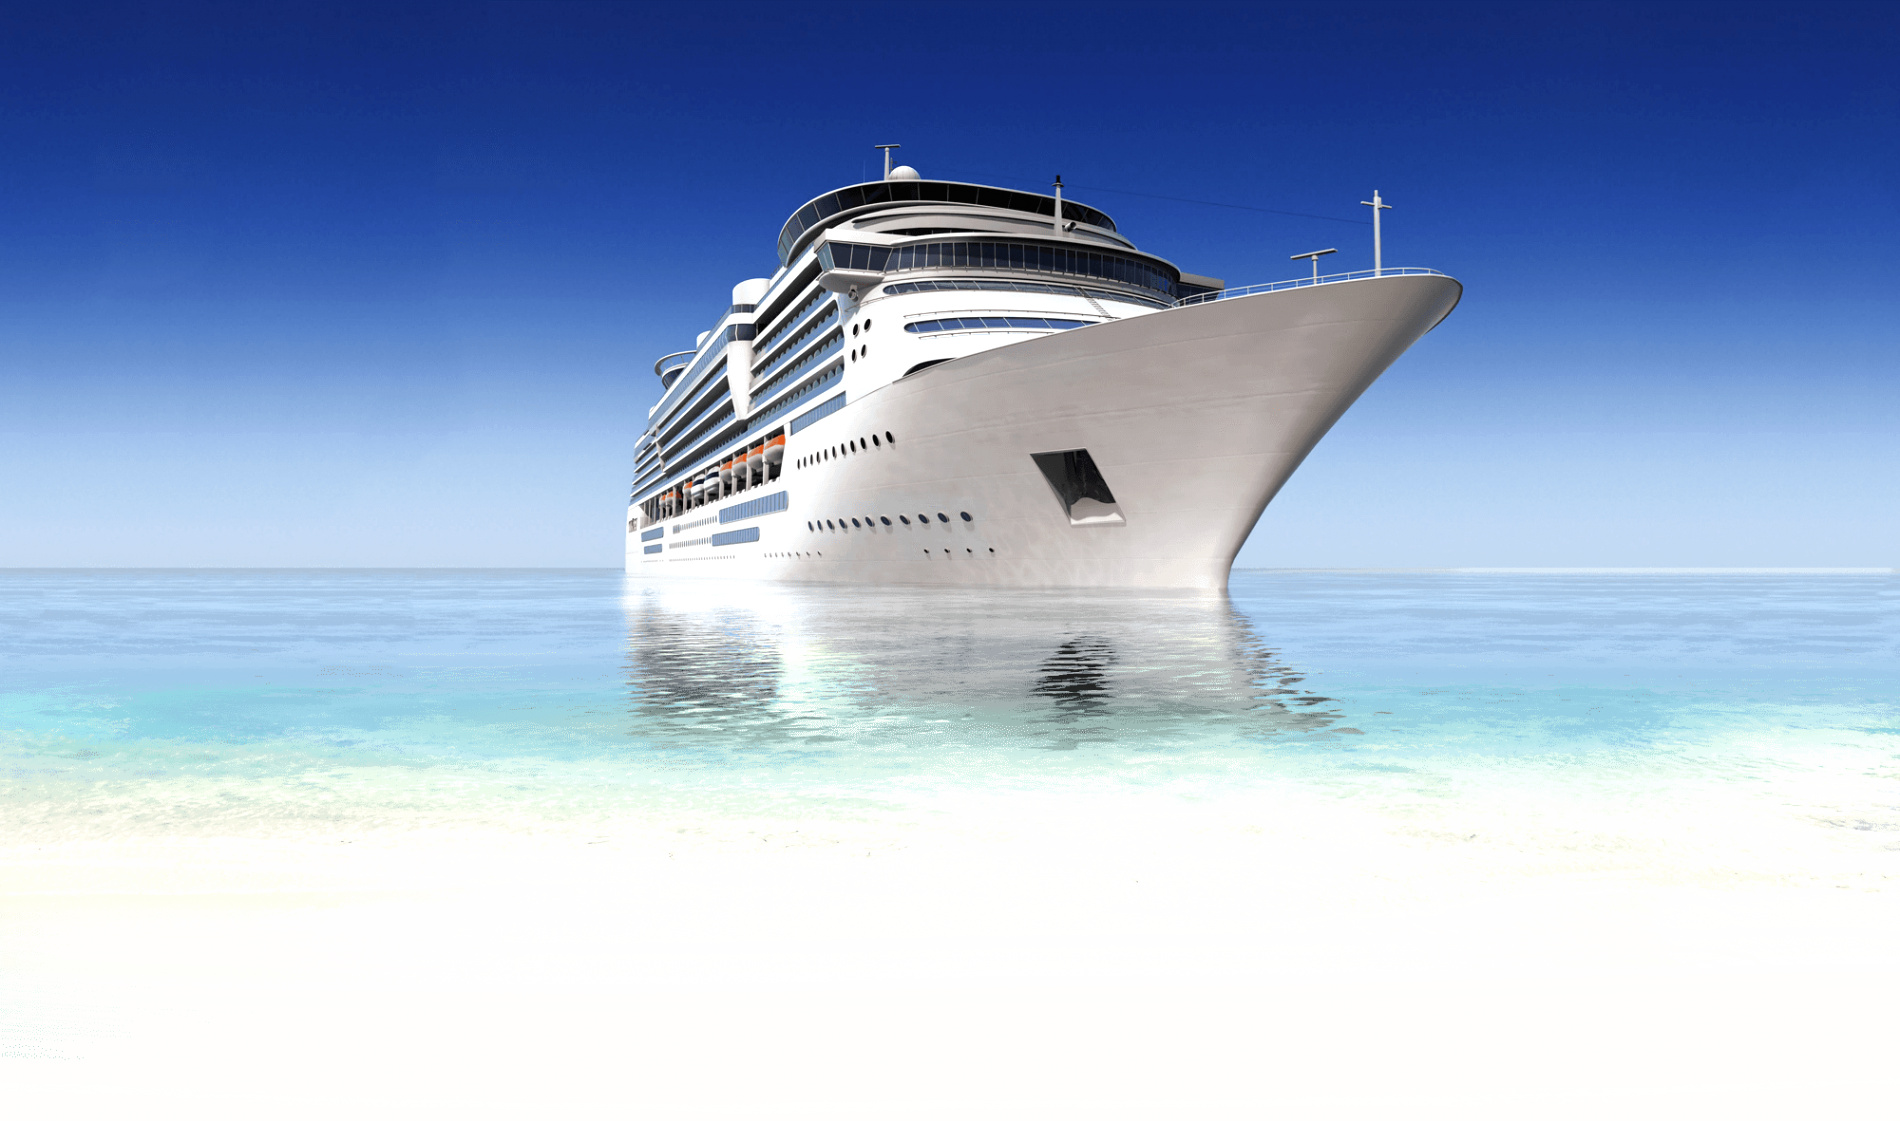 Cruise Ship Excursion Injury Lawyer Dans Cruise Ship Injury Lawyer Cruise Accident attorney